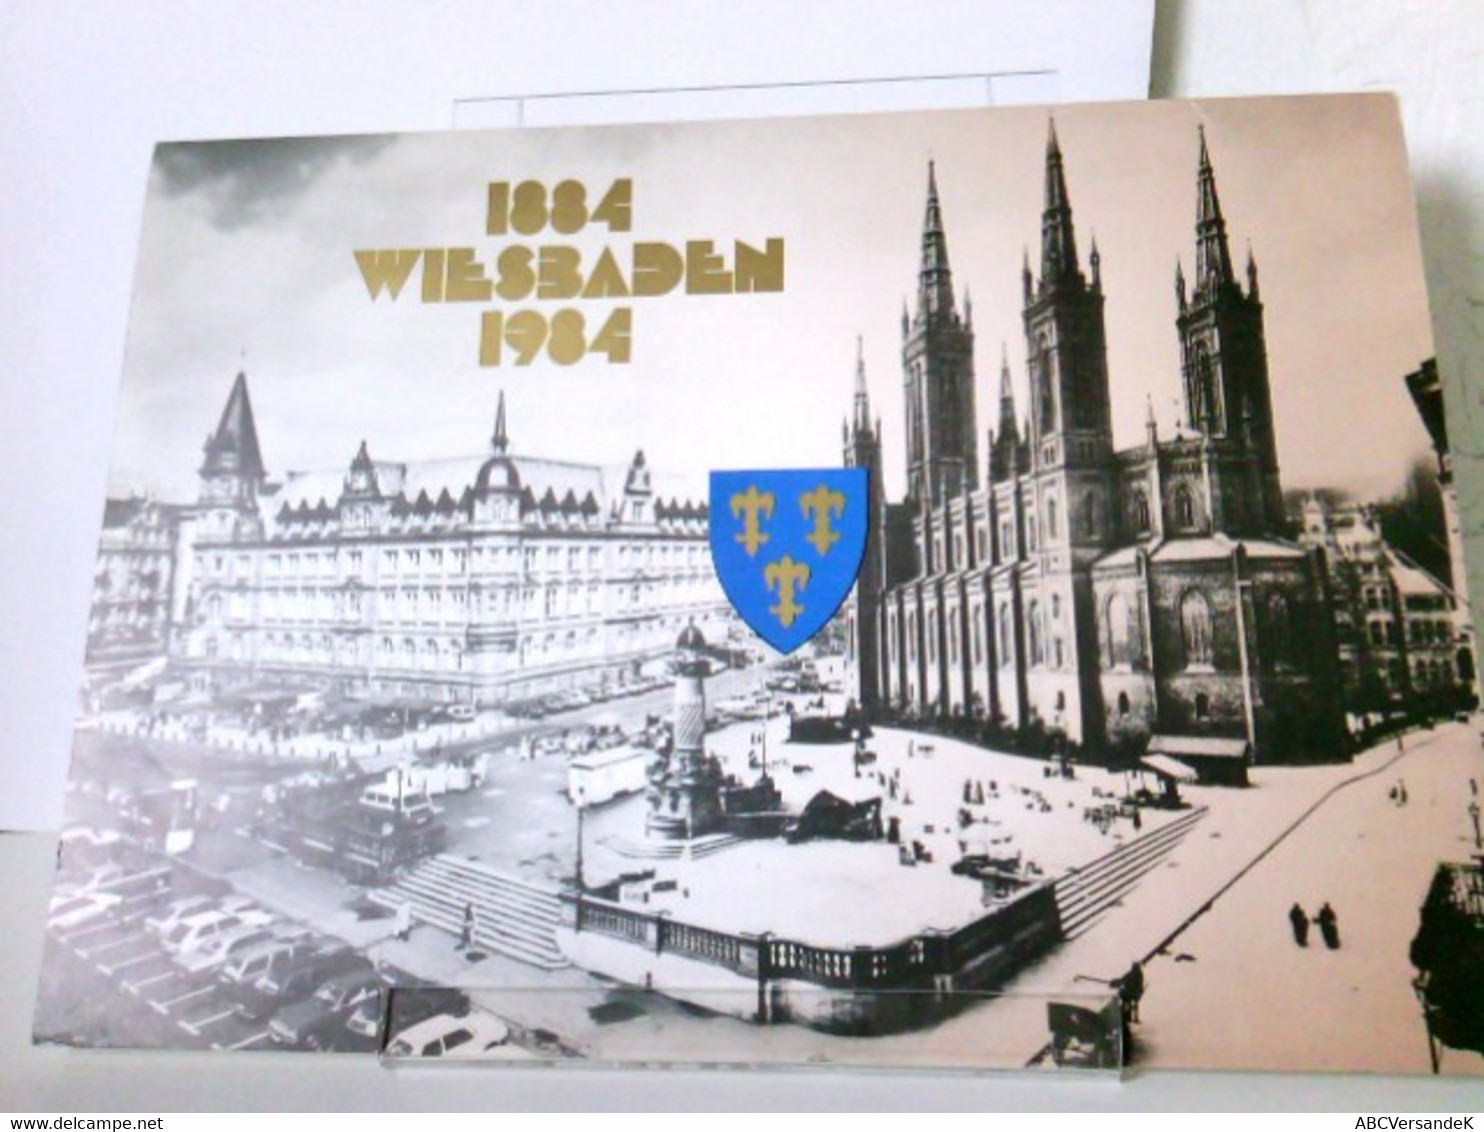 1884 Wiesbaden 1984 - Eine Fotodokumentation In Limitierter Auflage Aus Anlaß Der Eröffnung Unserer Filiale Wi - Fotografie